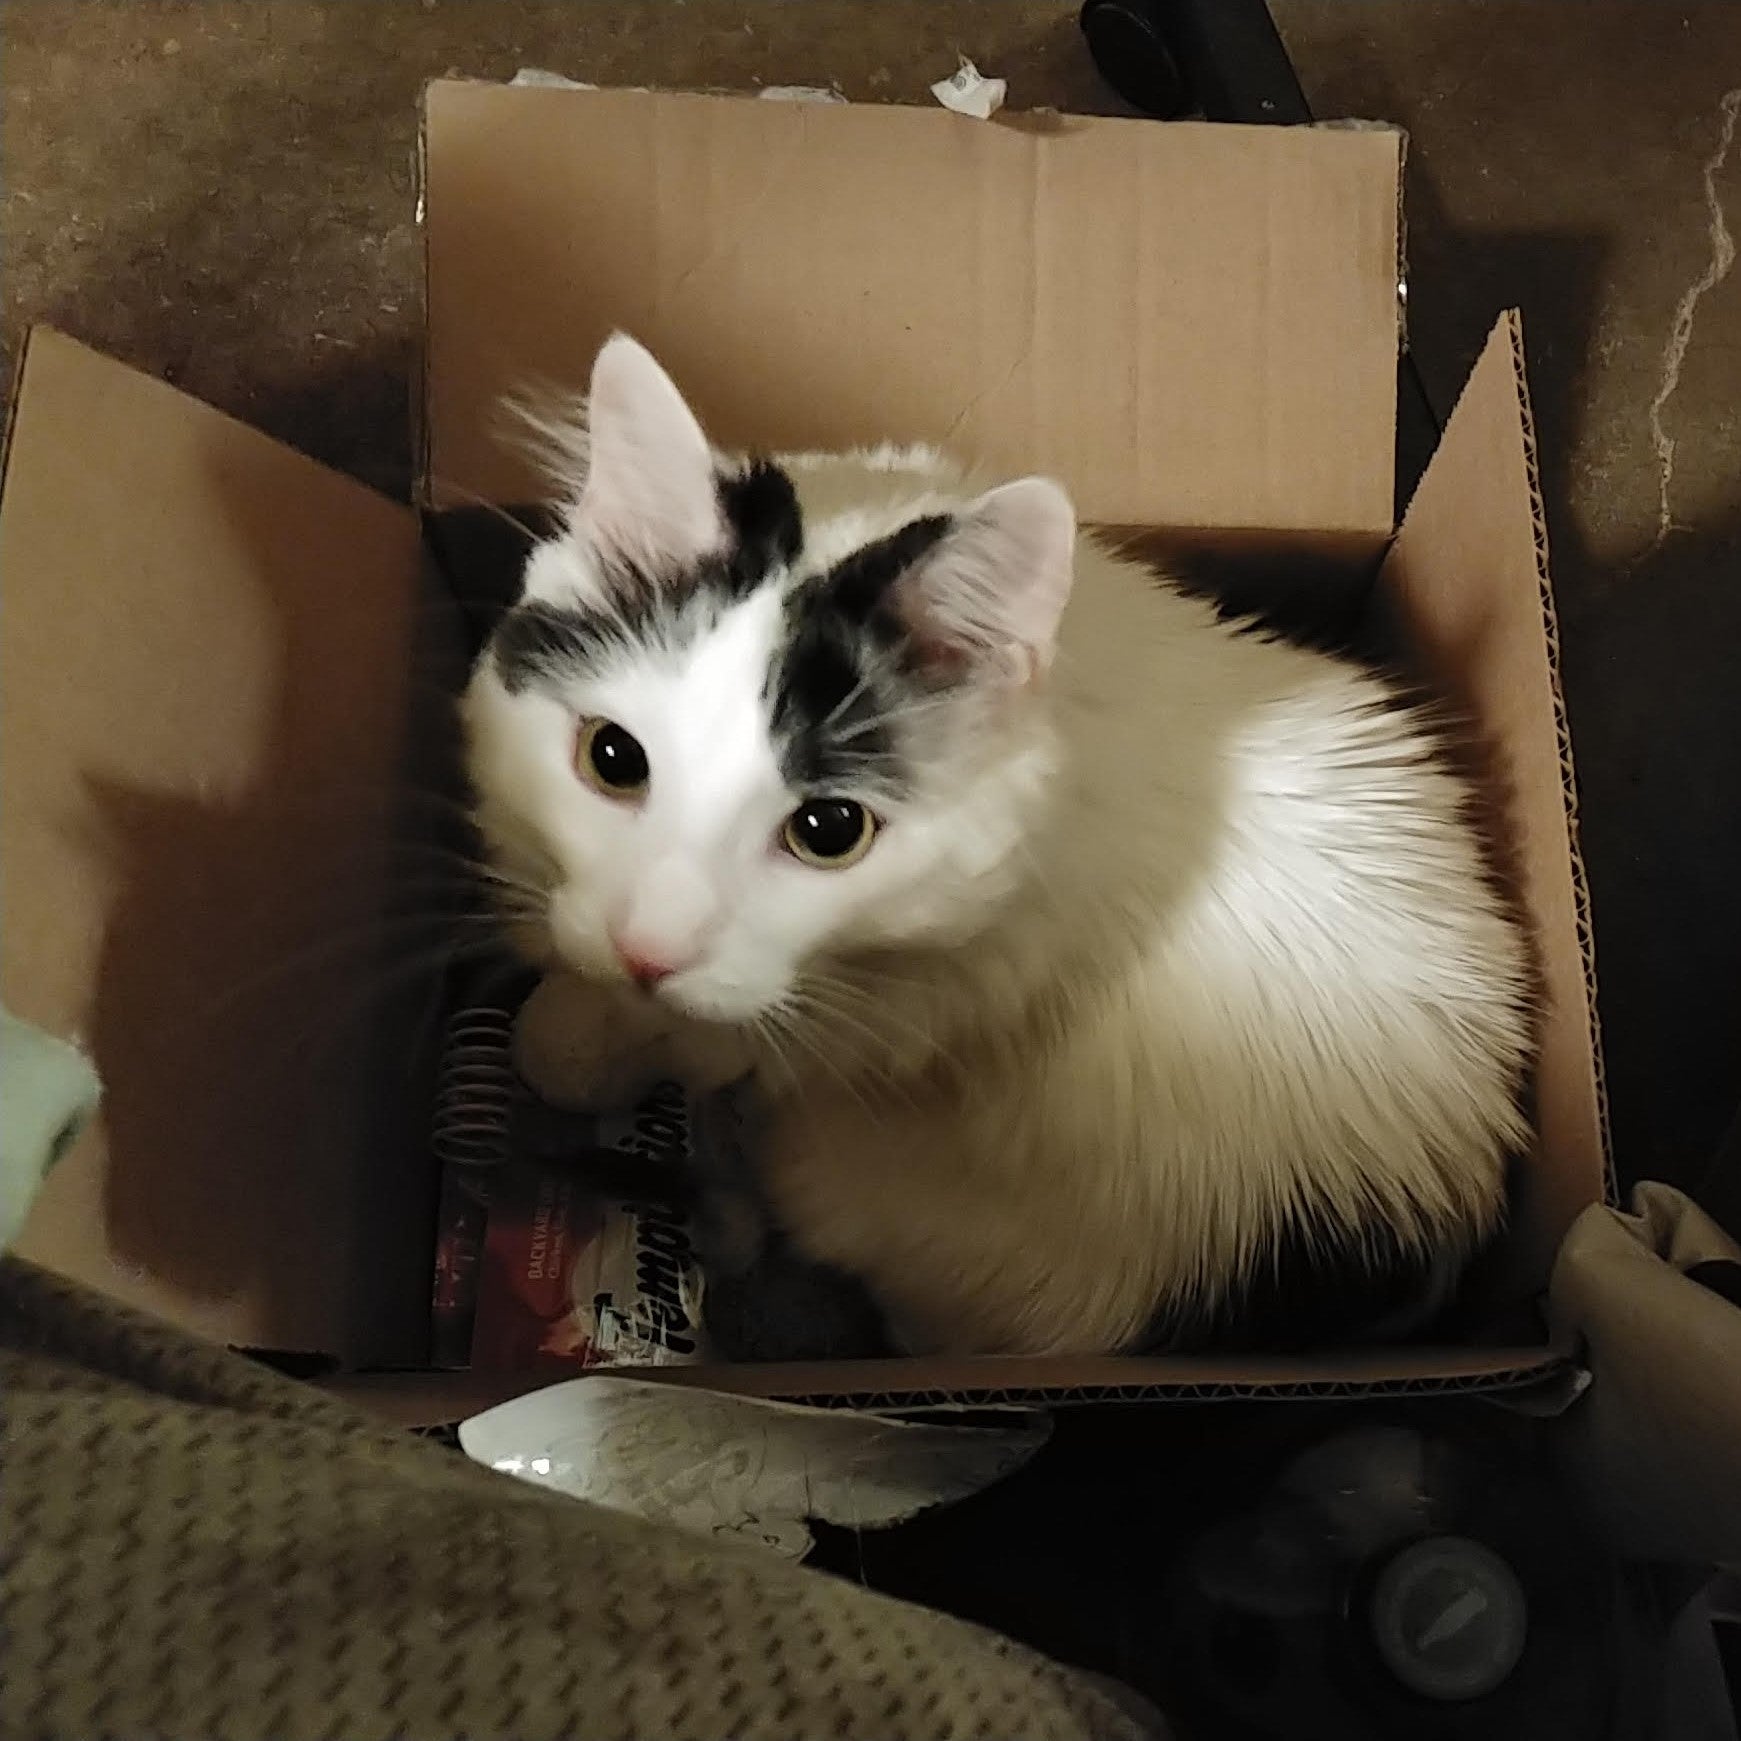 WINNER - Natasha's Black and white cat, Sunspot in box